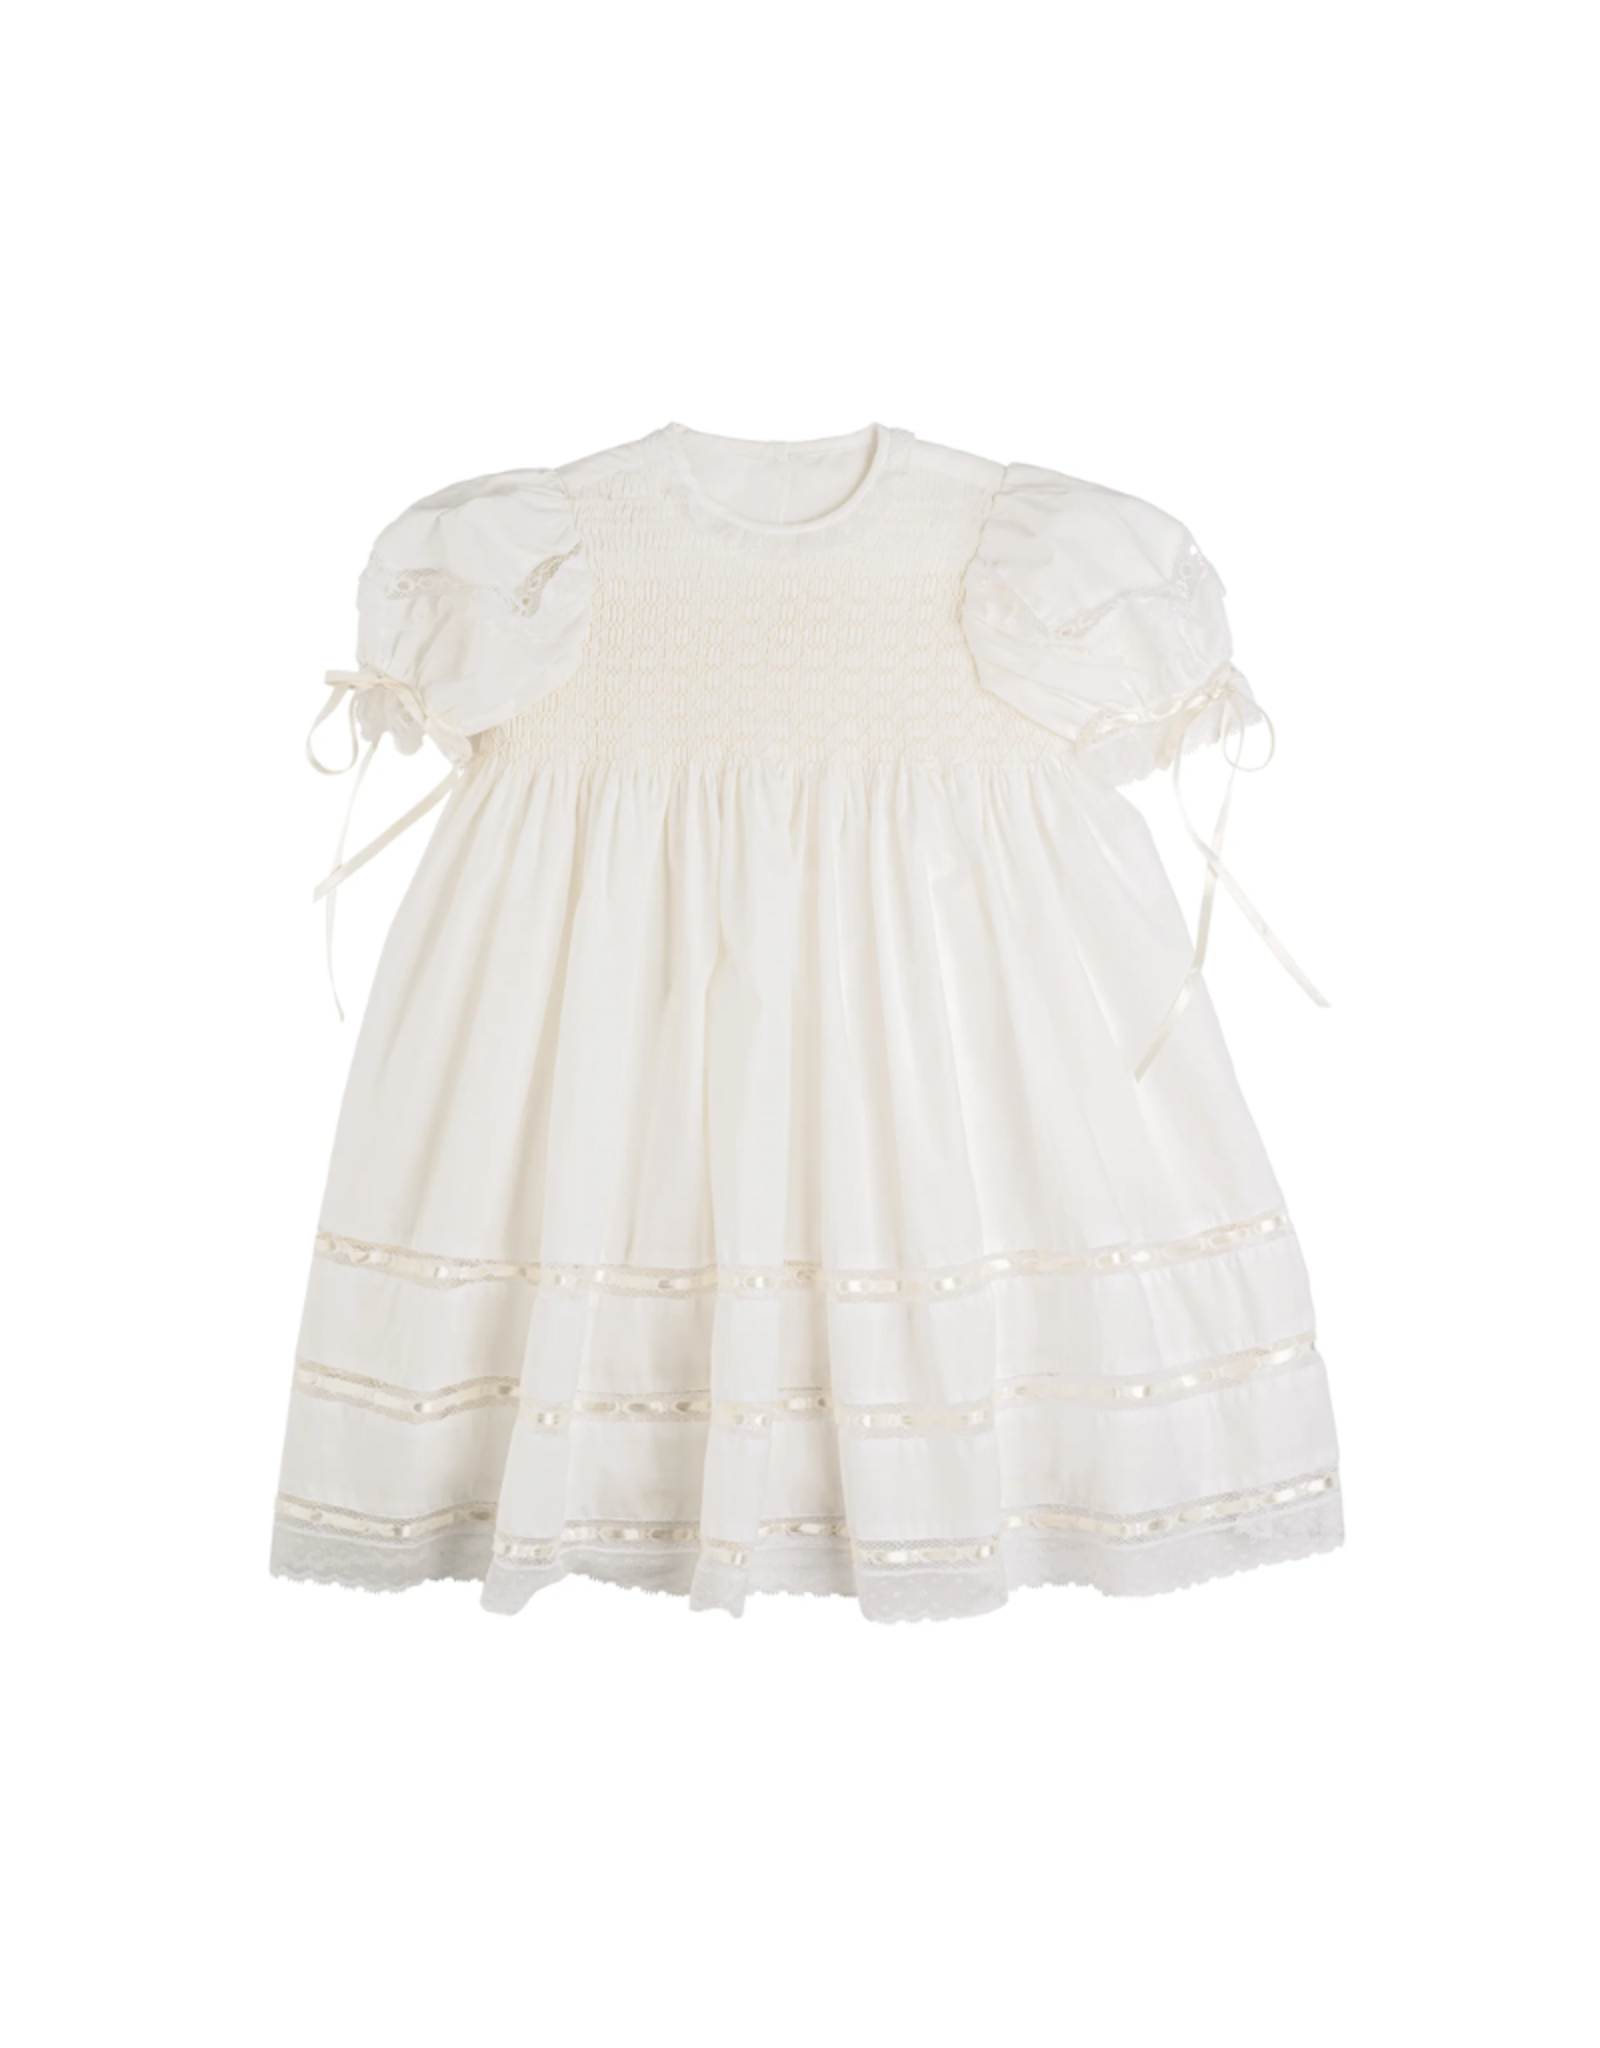 LullabySet Middleton Dress, Blessings White Batiste Heirloom